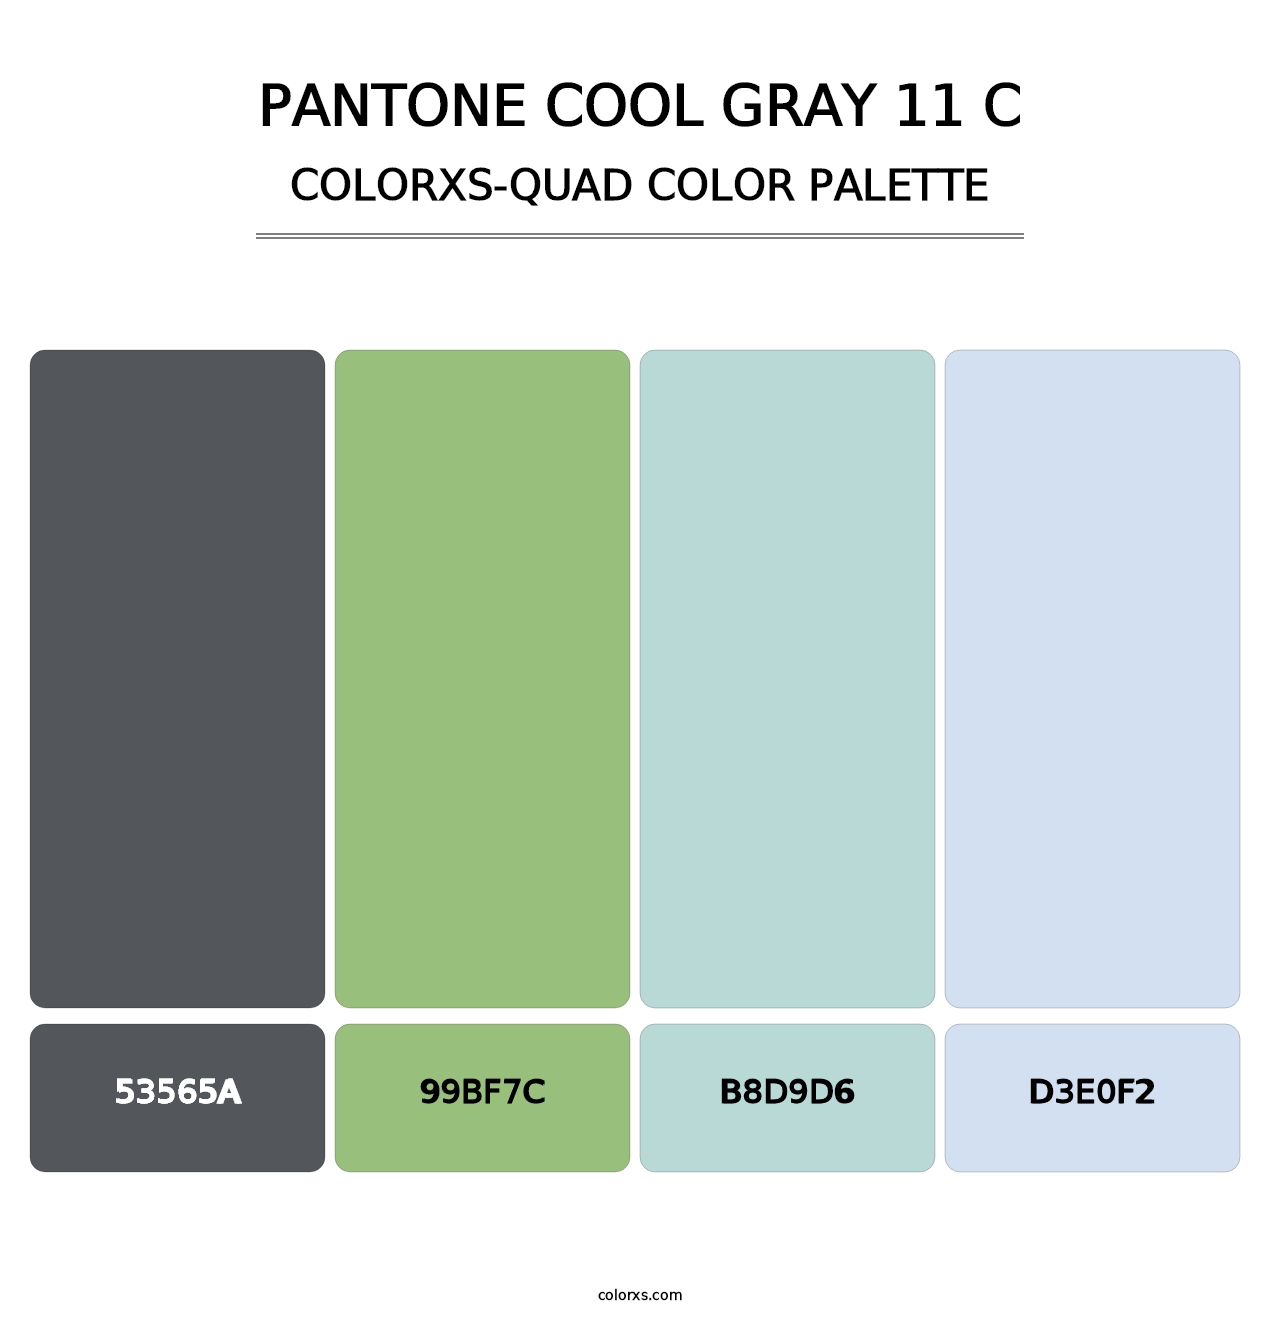 PANTONE Cool Gray 11 C - Colorxs Quad Palette